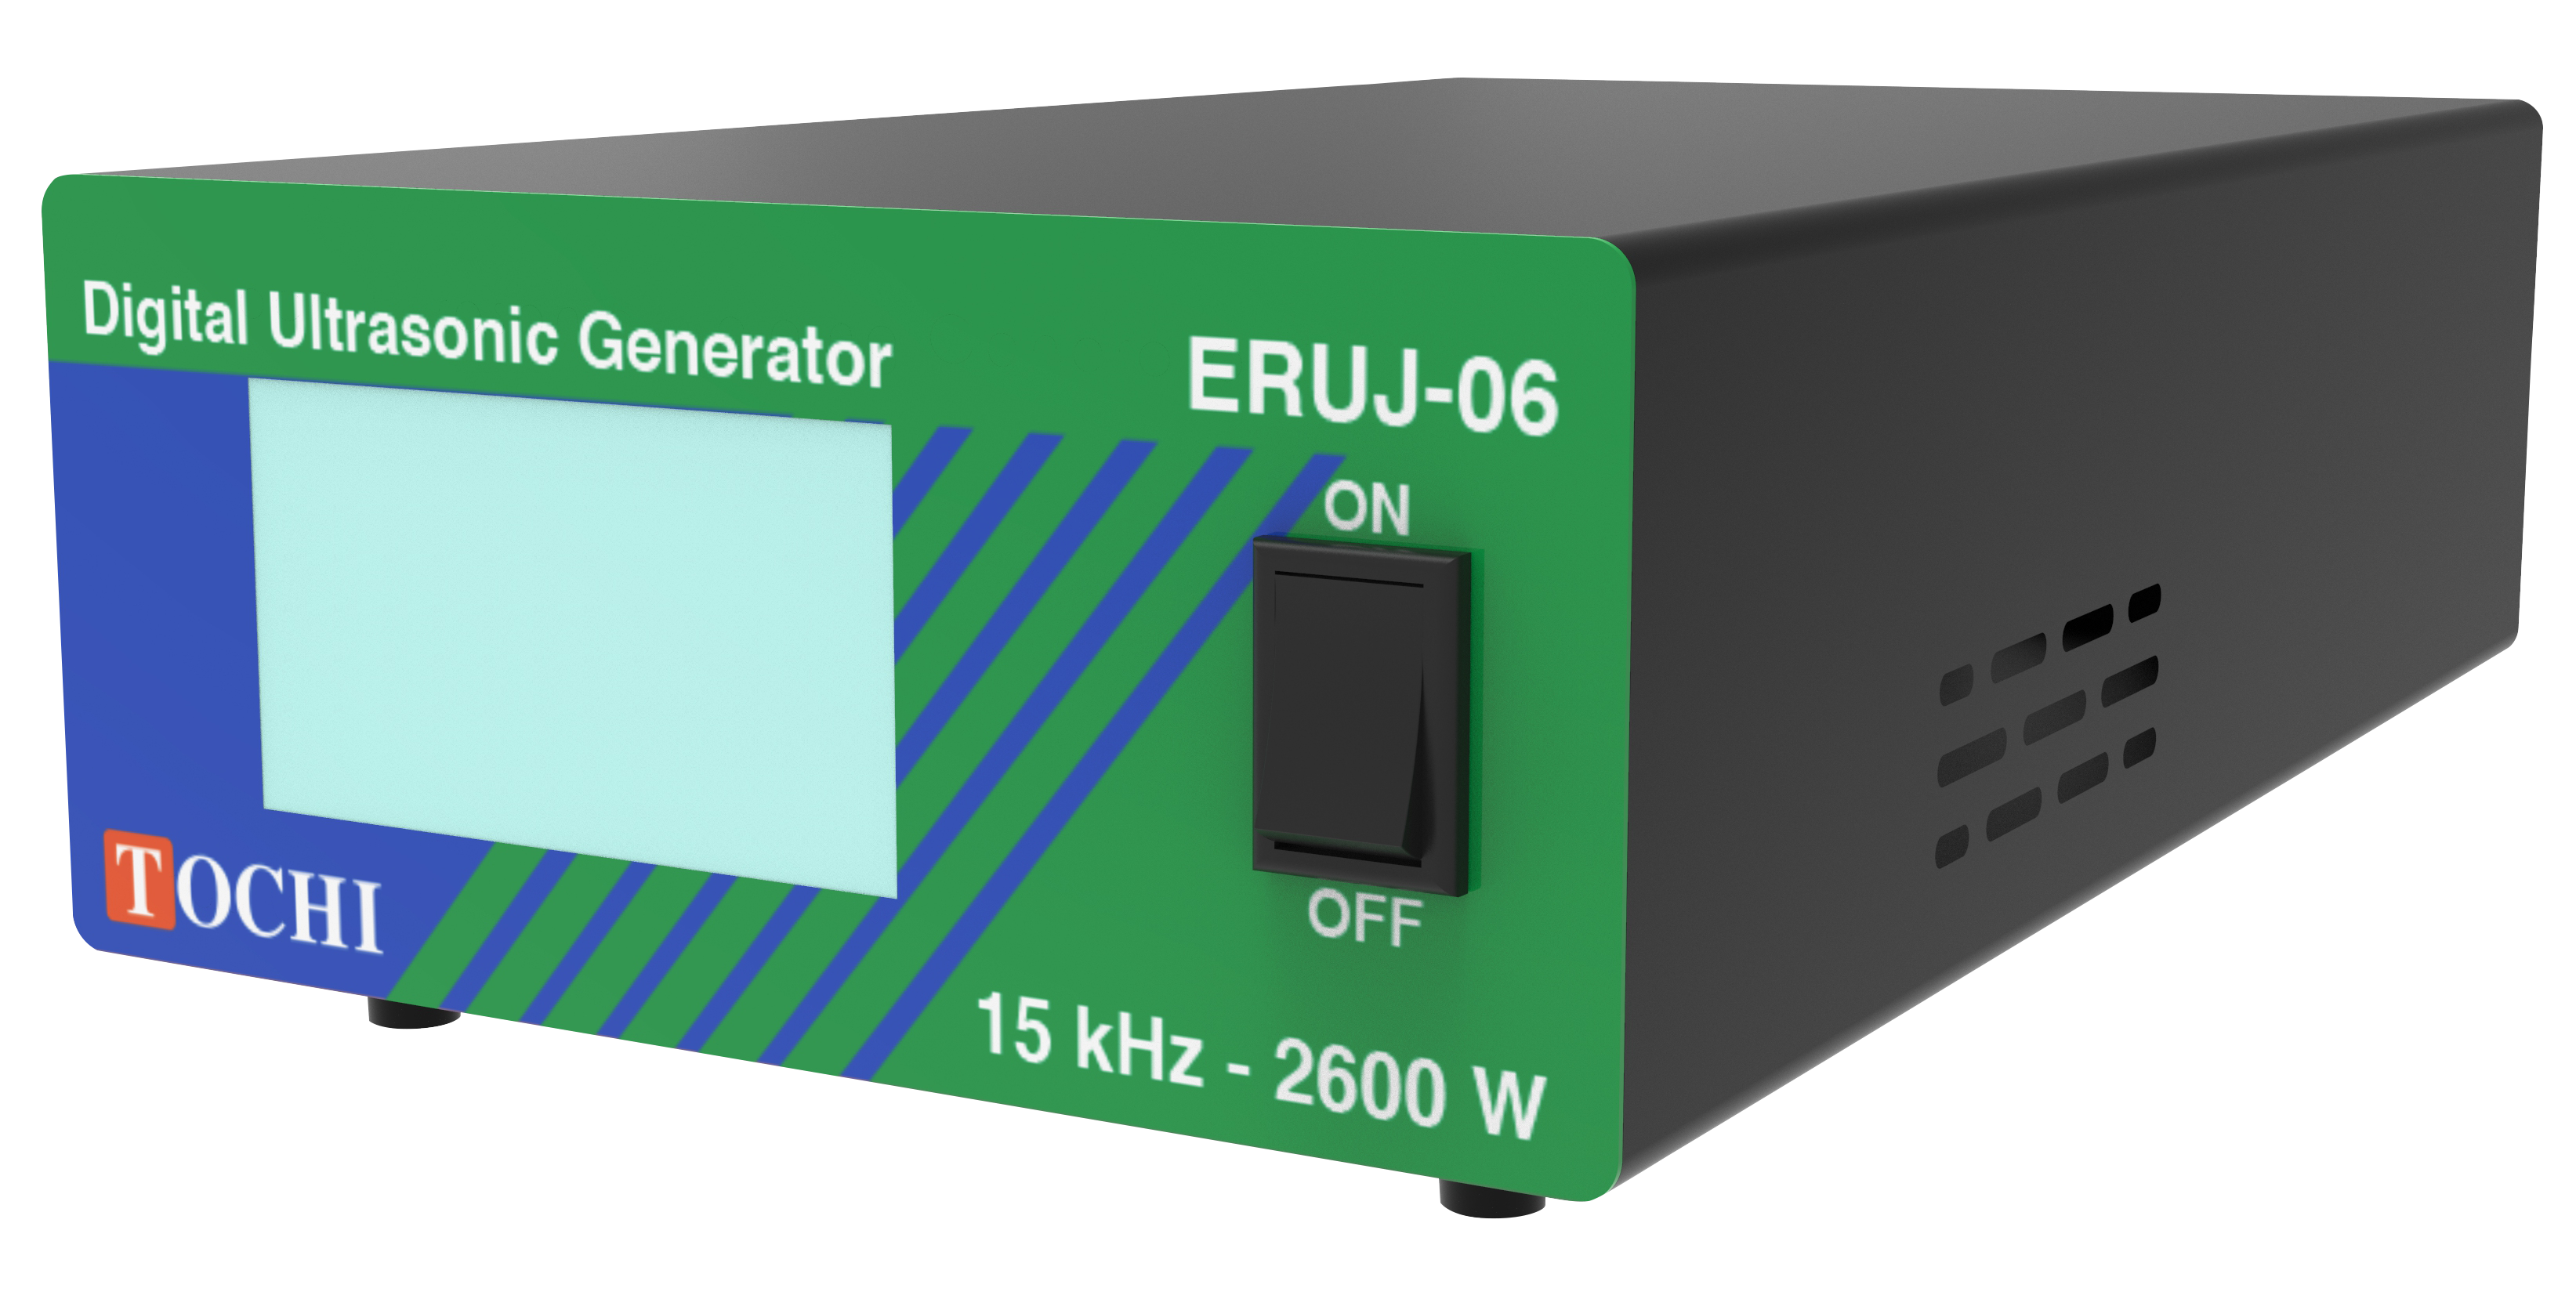 Dijital Ultrasonik Kaynak Makinesi - Ultrasonik Jeneratör ERUJ-06